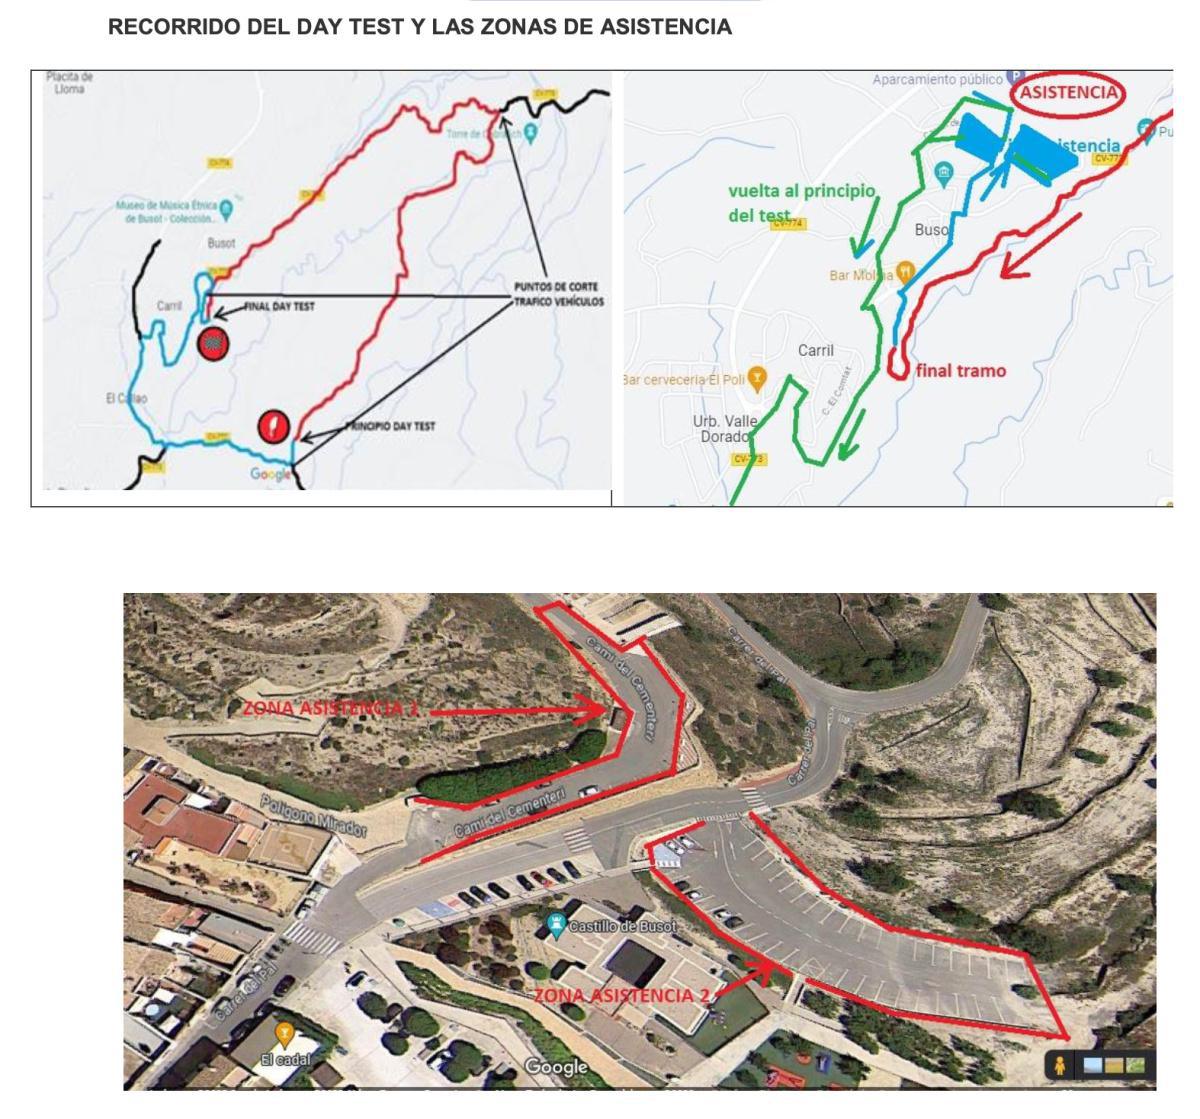 El rallye La Nucía - Mediterráneo ‘Trofeo Costa Blanca’ tendrá una jornada de test en Busot